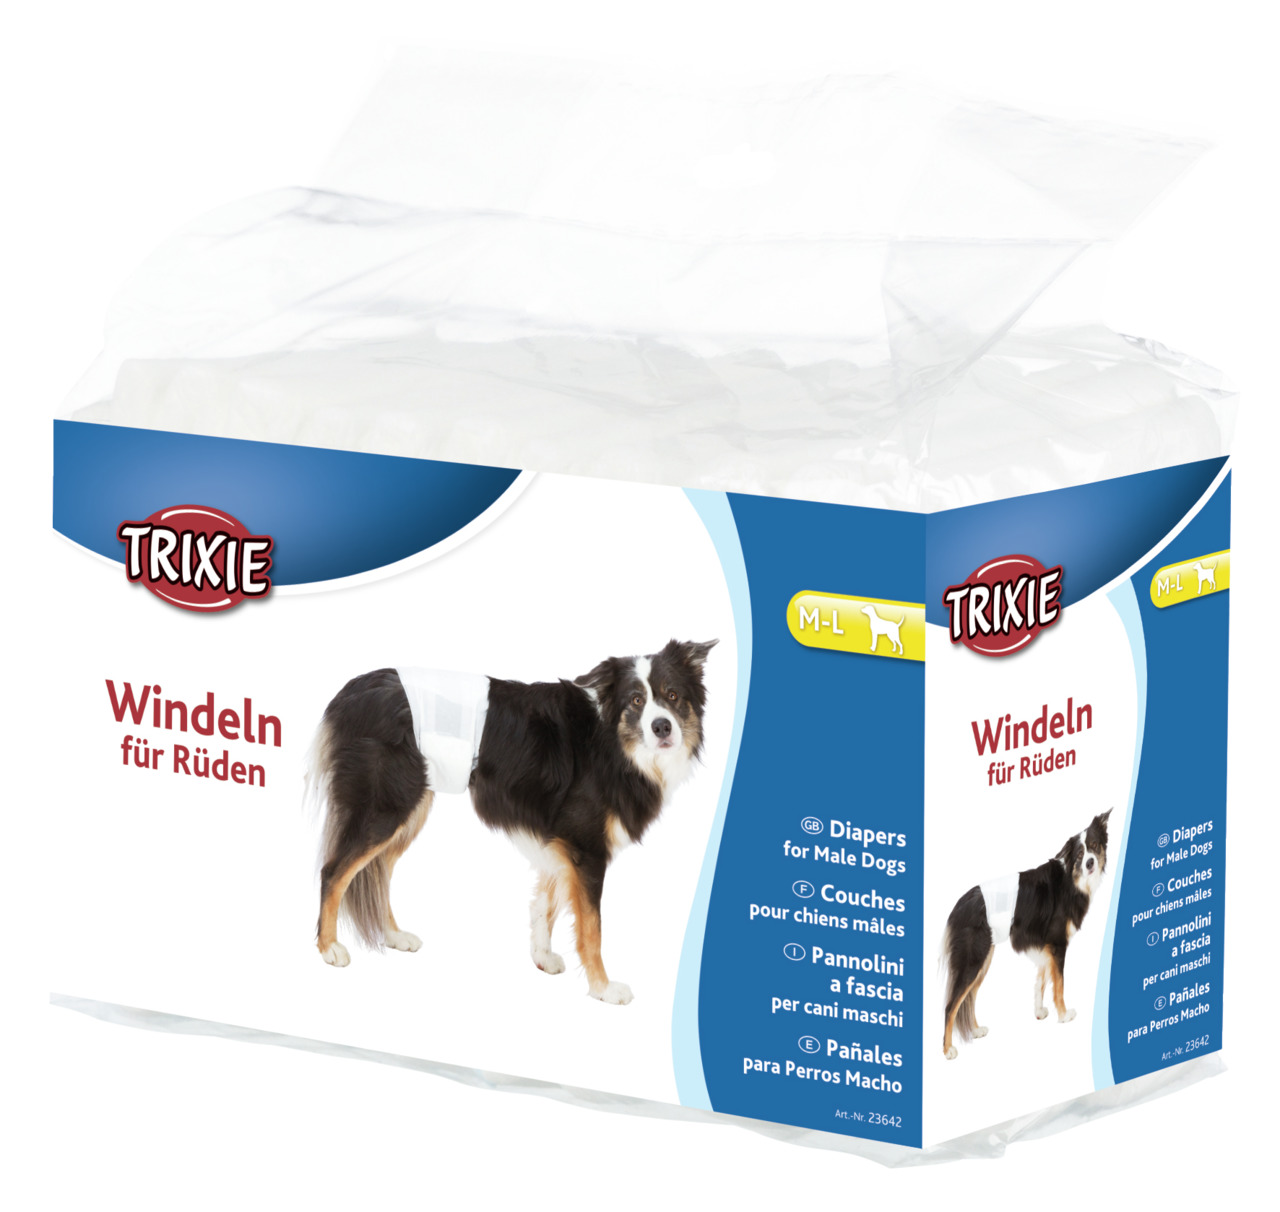 Trixie Windeln für Rüden Hunde Hygiene Inkontinenz Markieren M - L